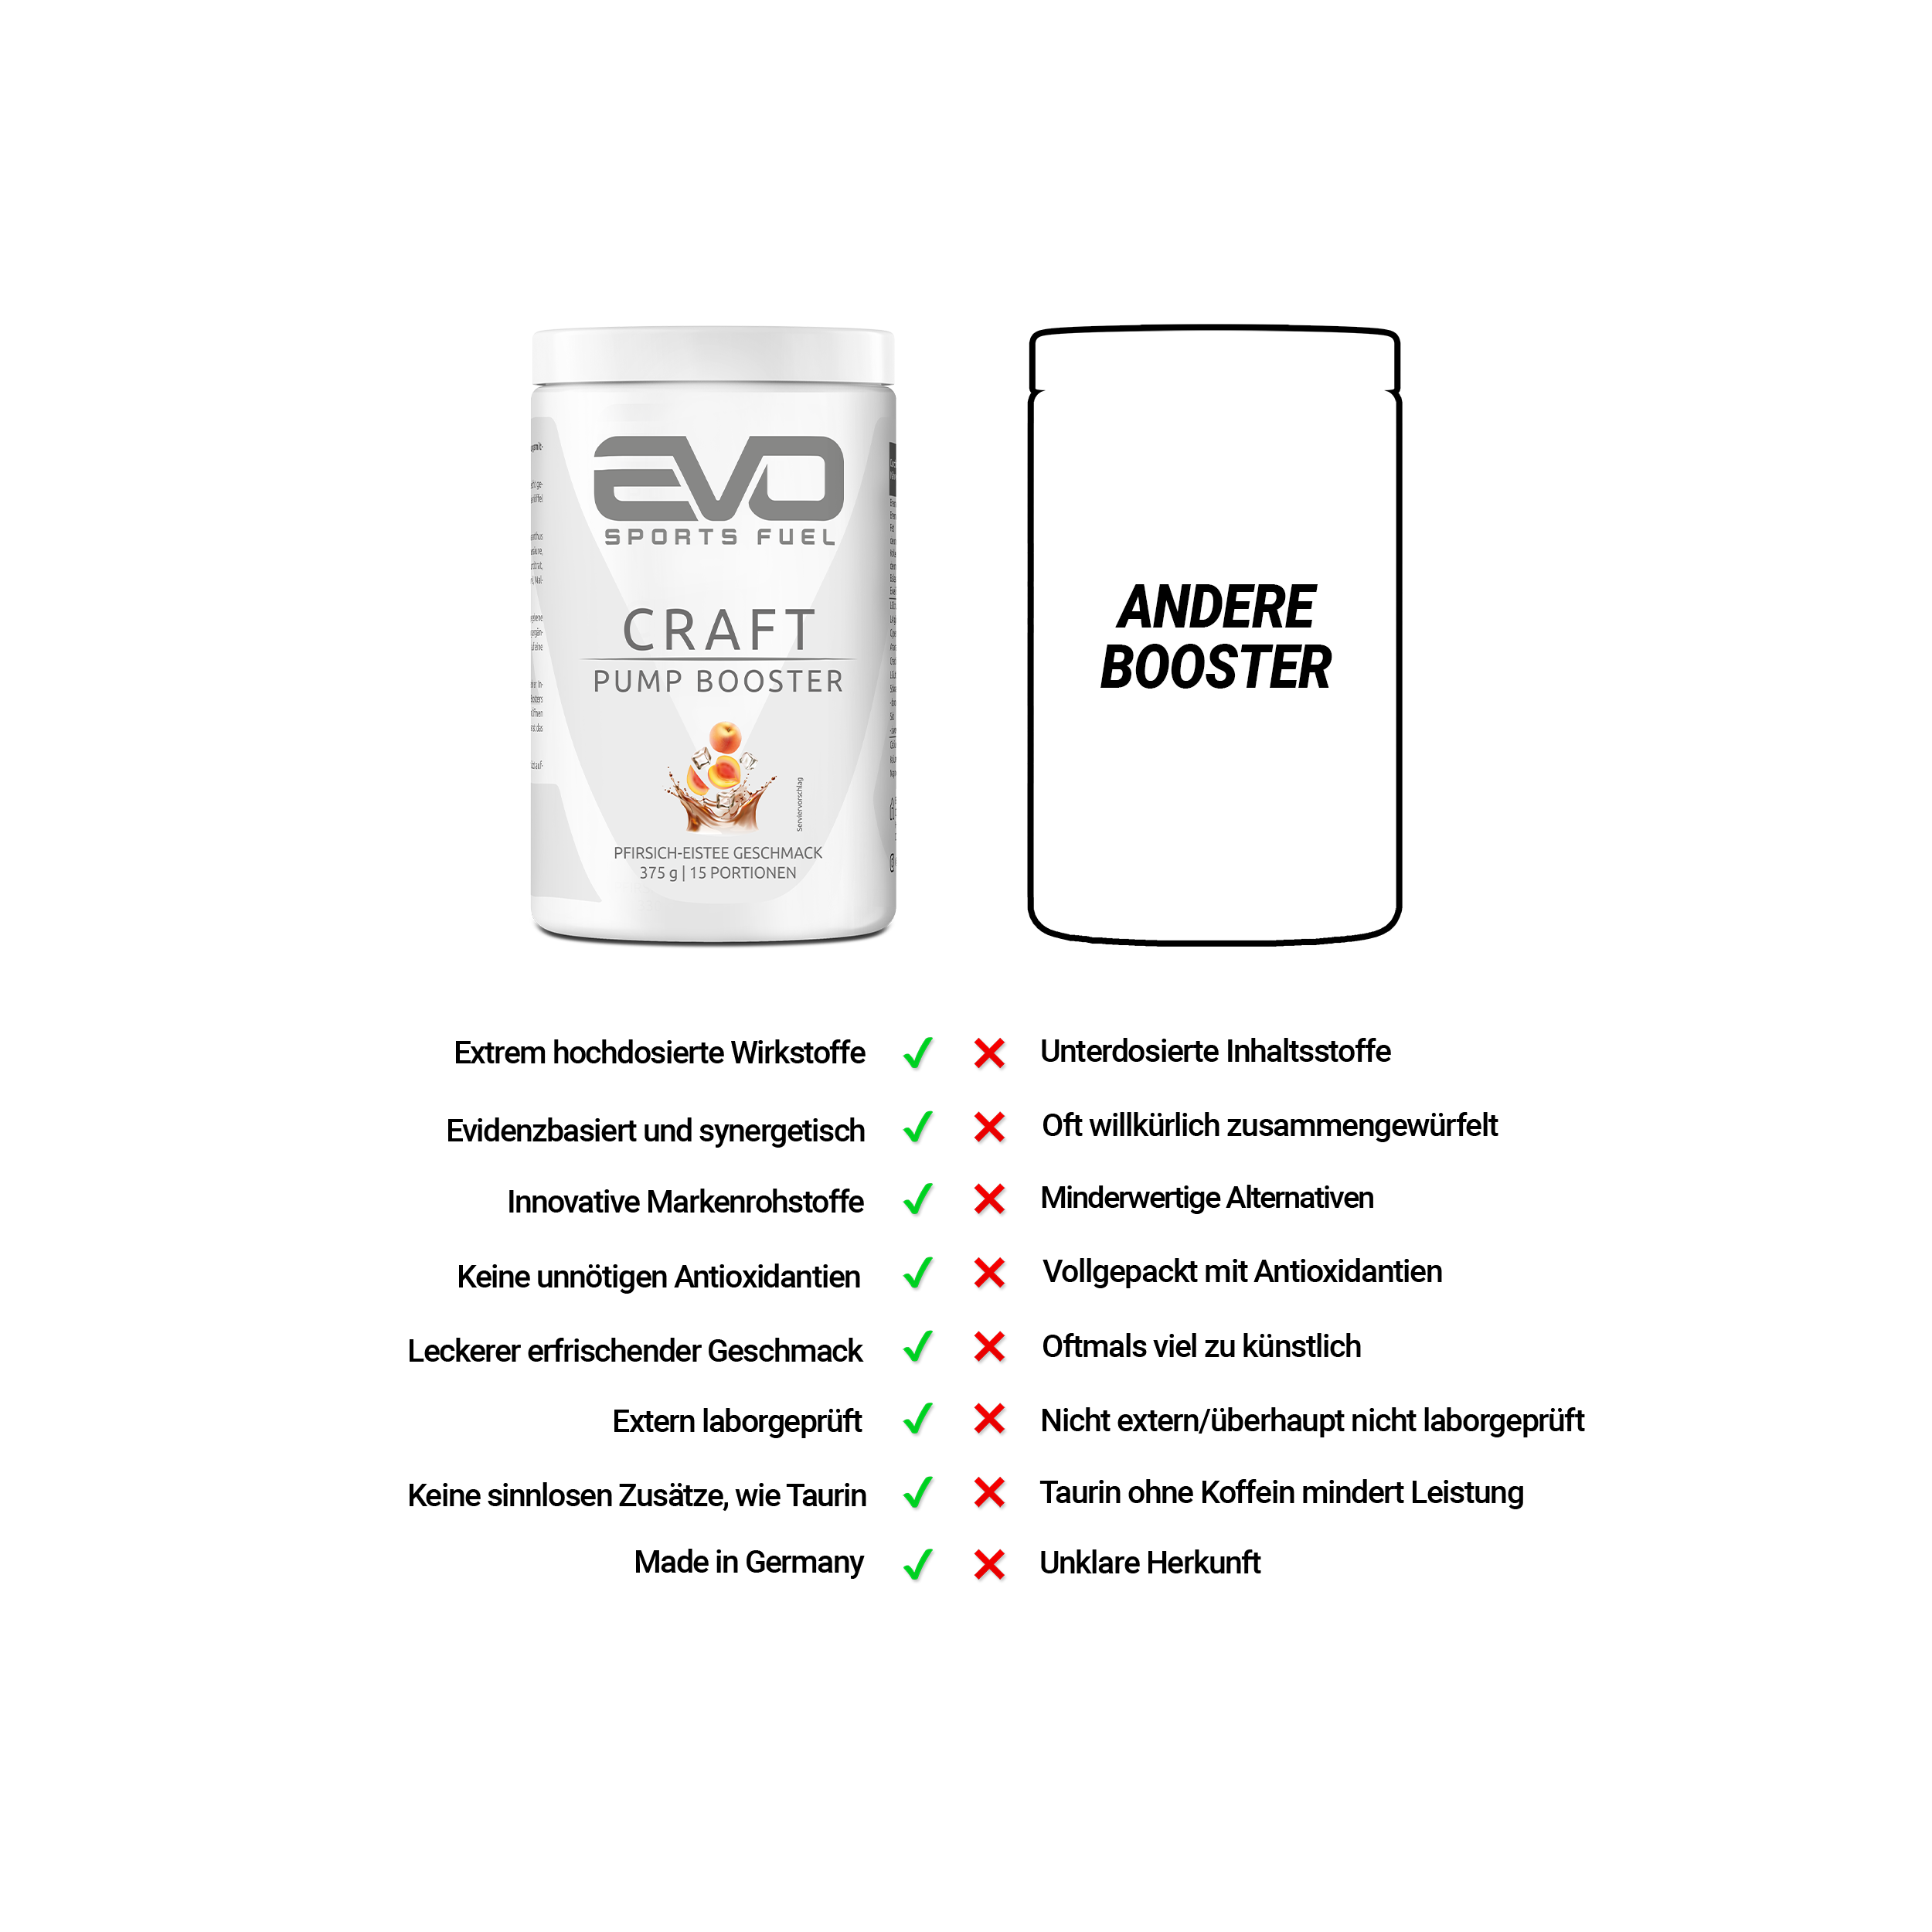 EVO Craft im Vergleich